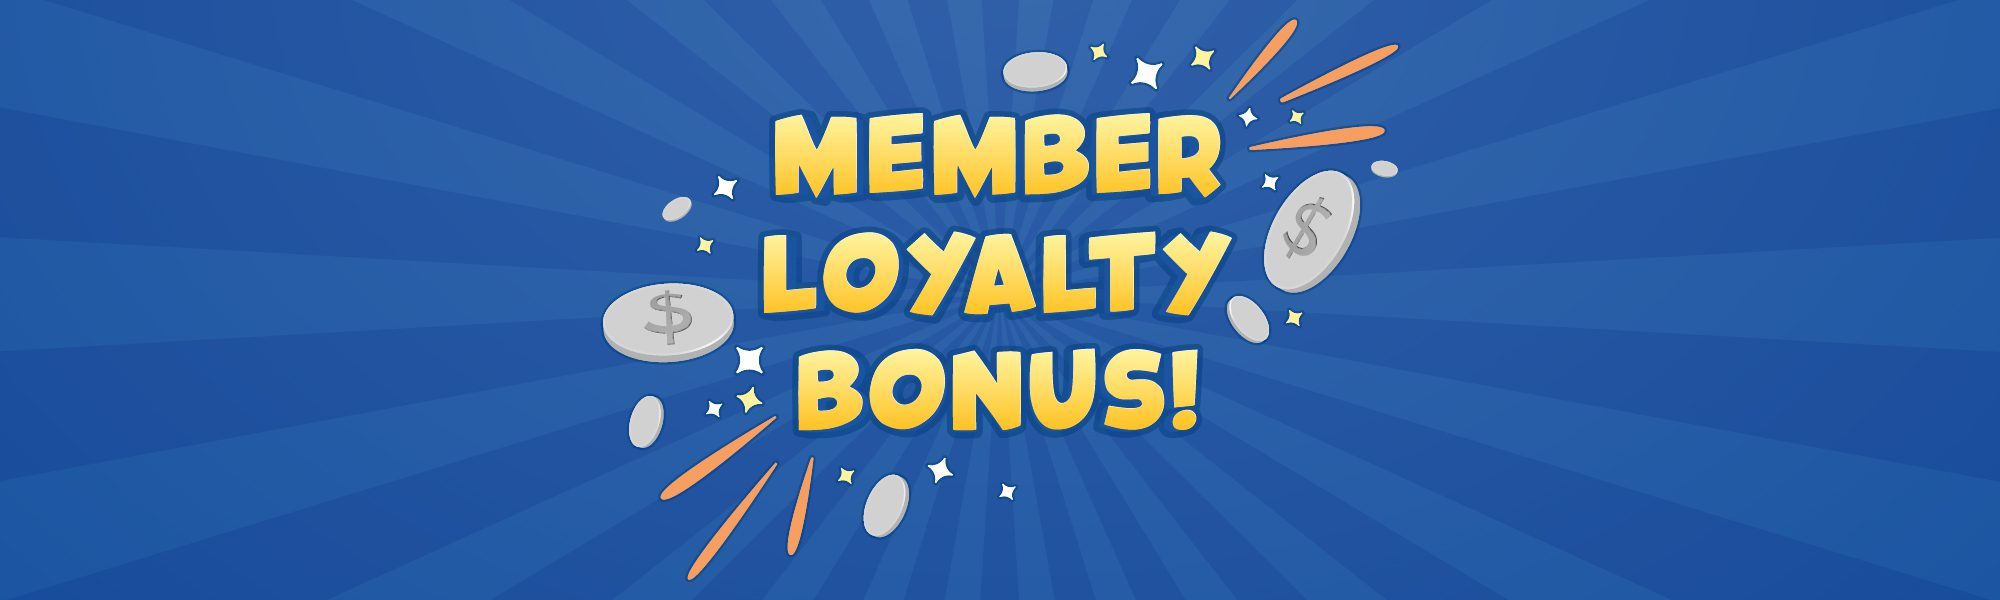 Member Loyalty Bonus banner